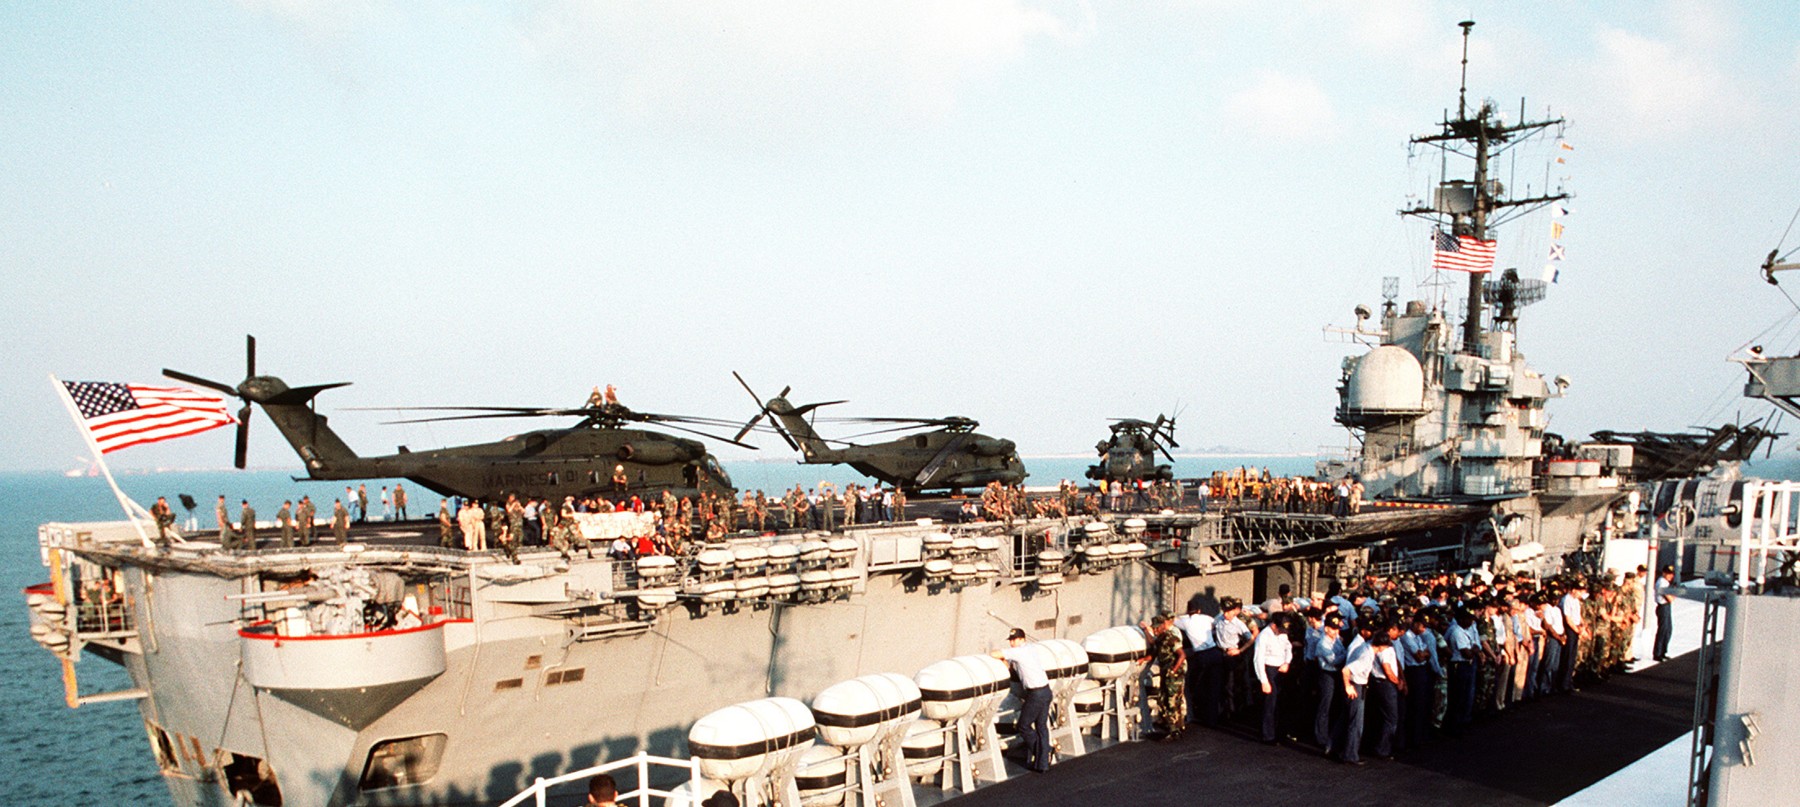 lph-2 uss iwo jima class amphibious assault ship landing platform helicopter us navy 54